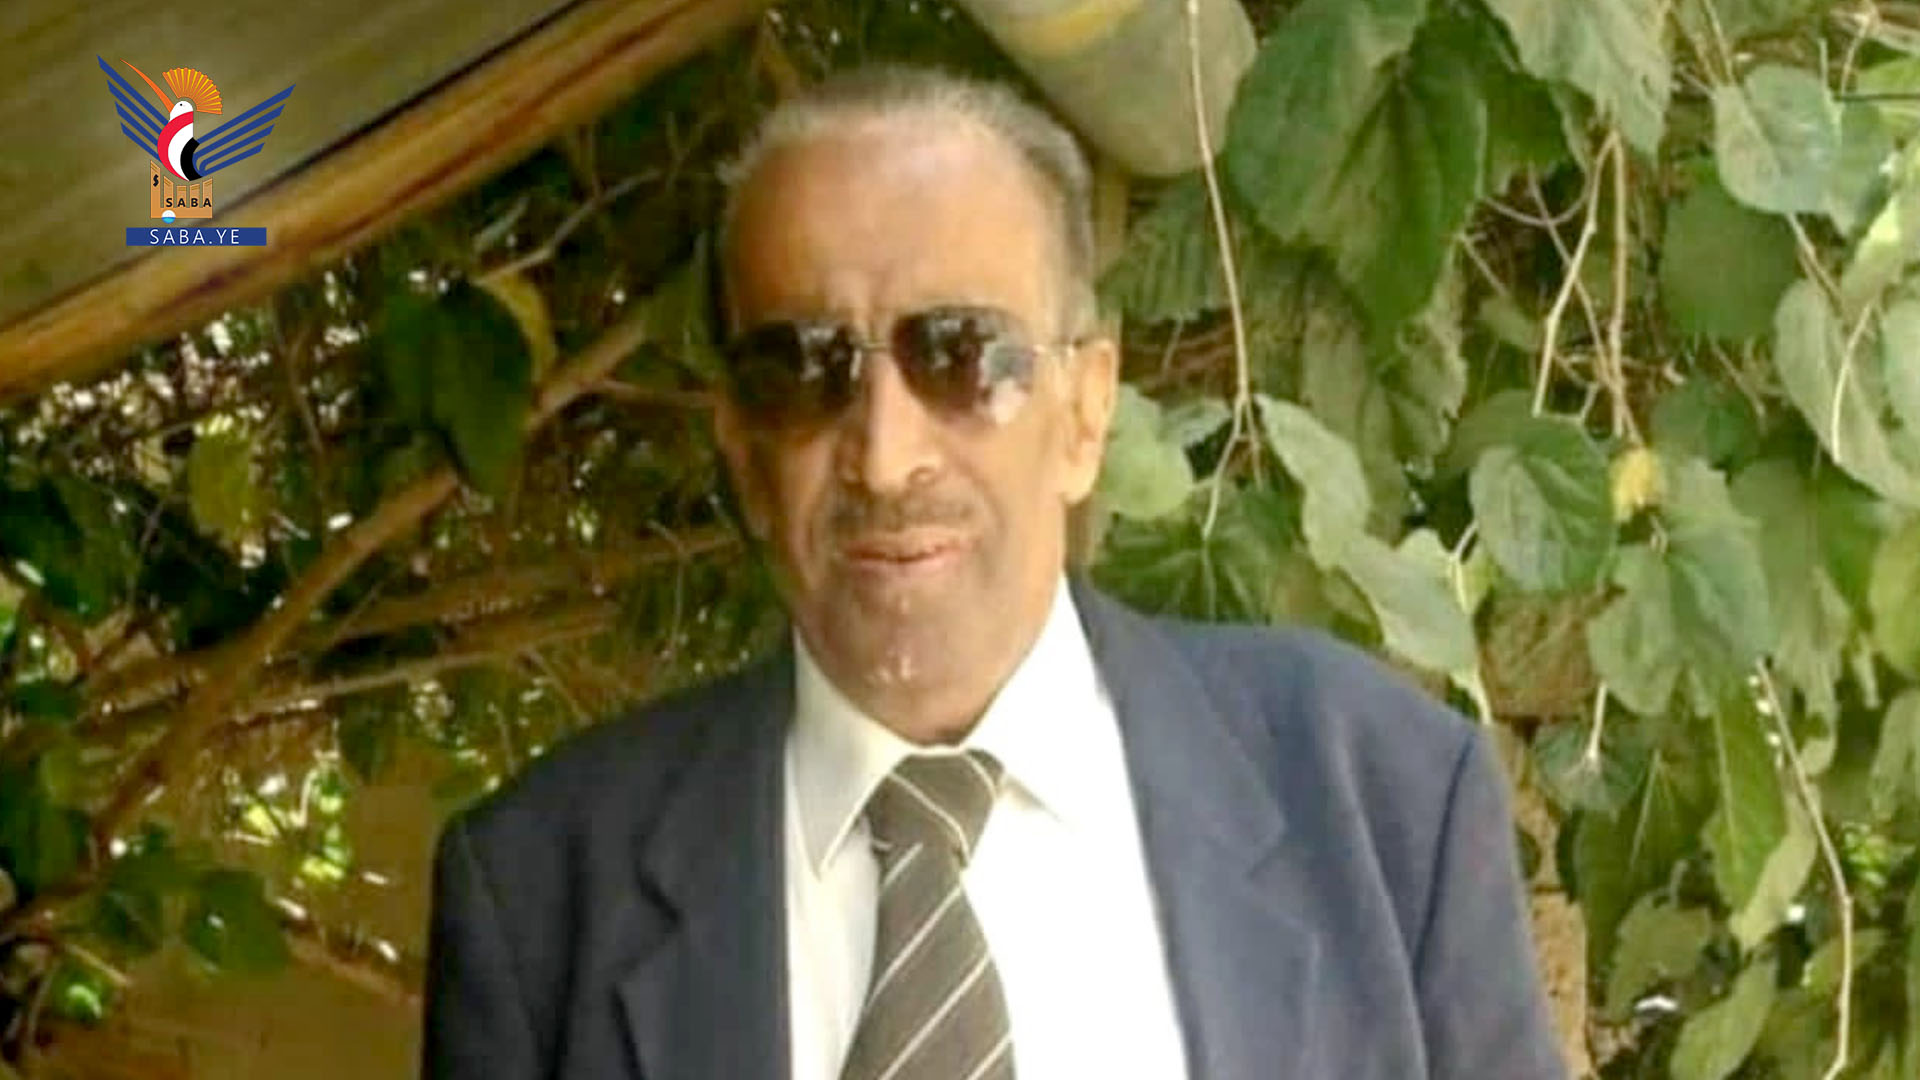 Le ministère de l'Information et l'agence Saba pleurent le journaliste Abdul Karim Jabari